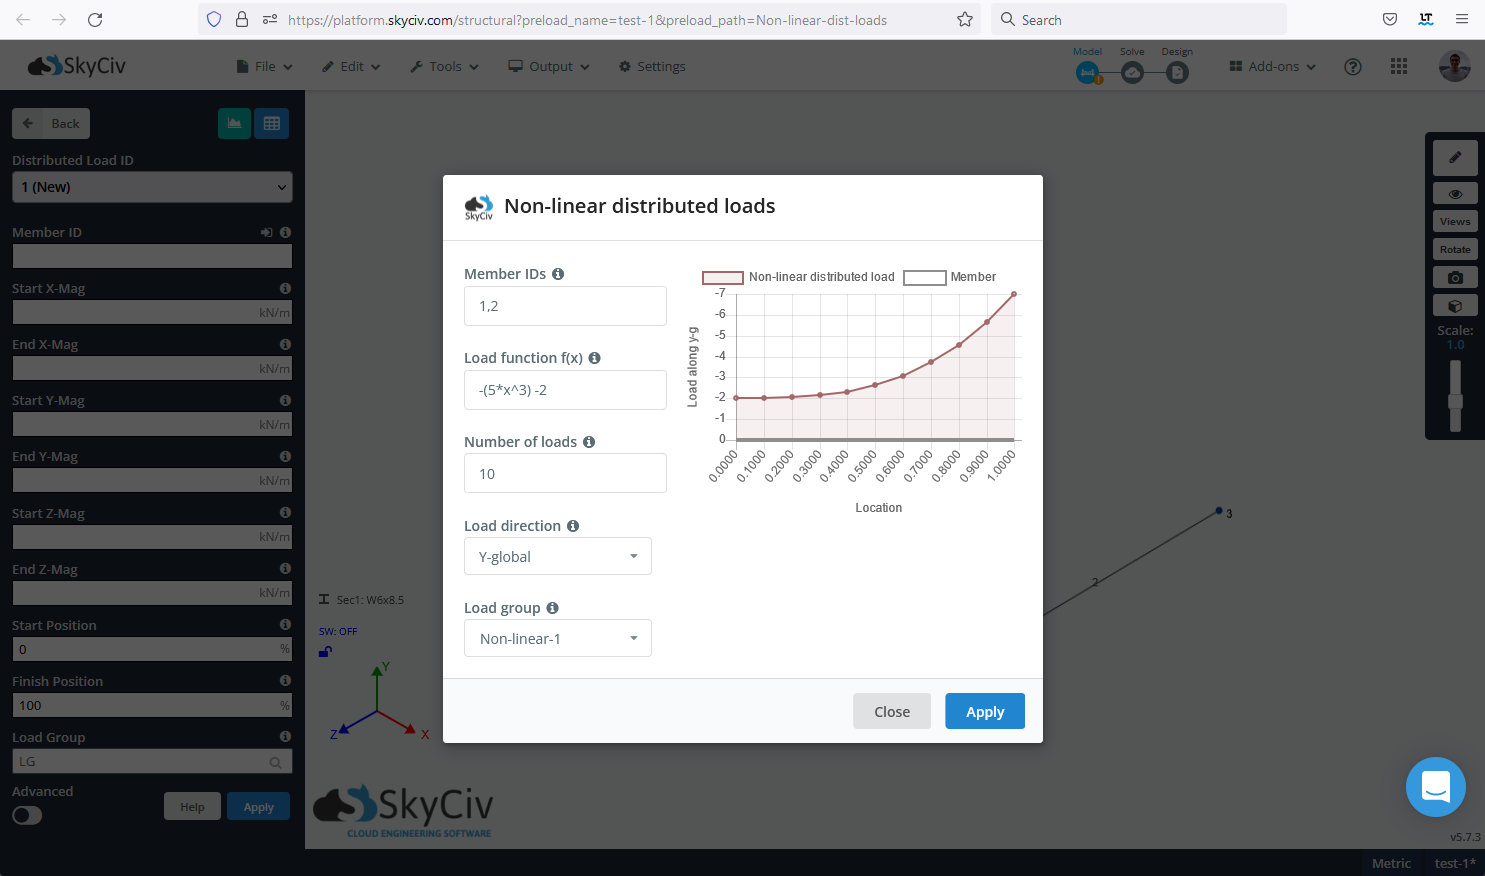 SkyCiv S3D 展示了如何定义和应用非线性或方程定义的分布式负载